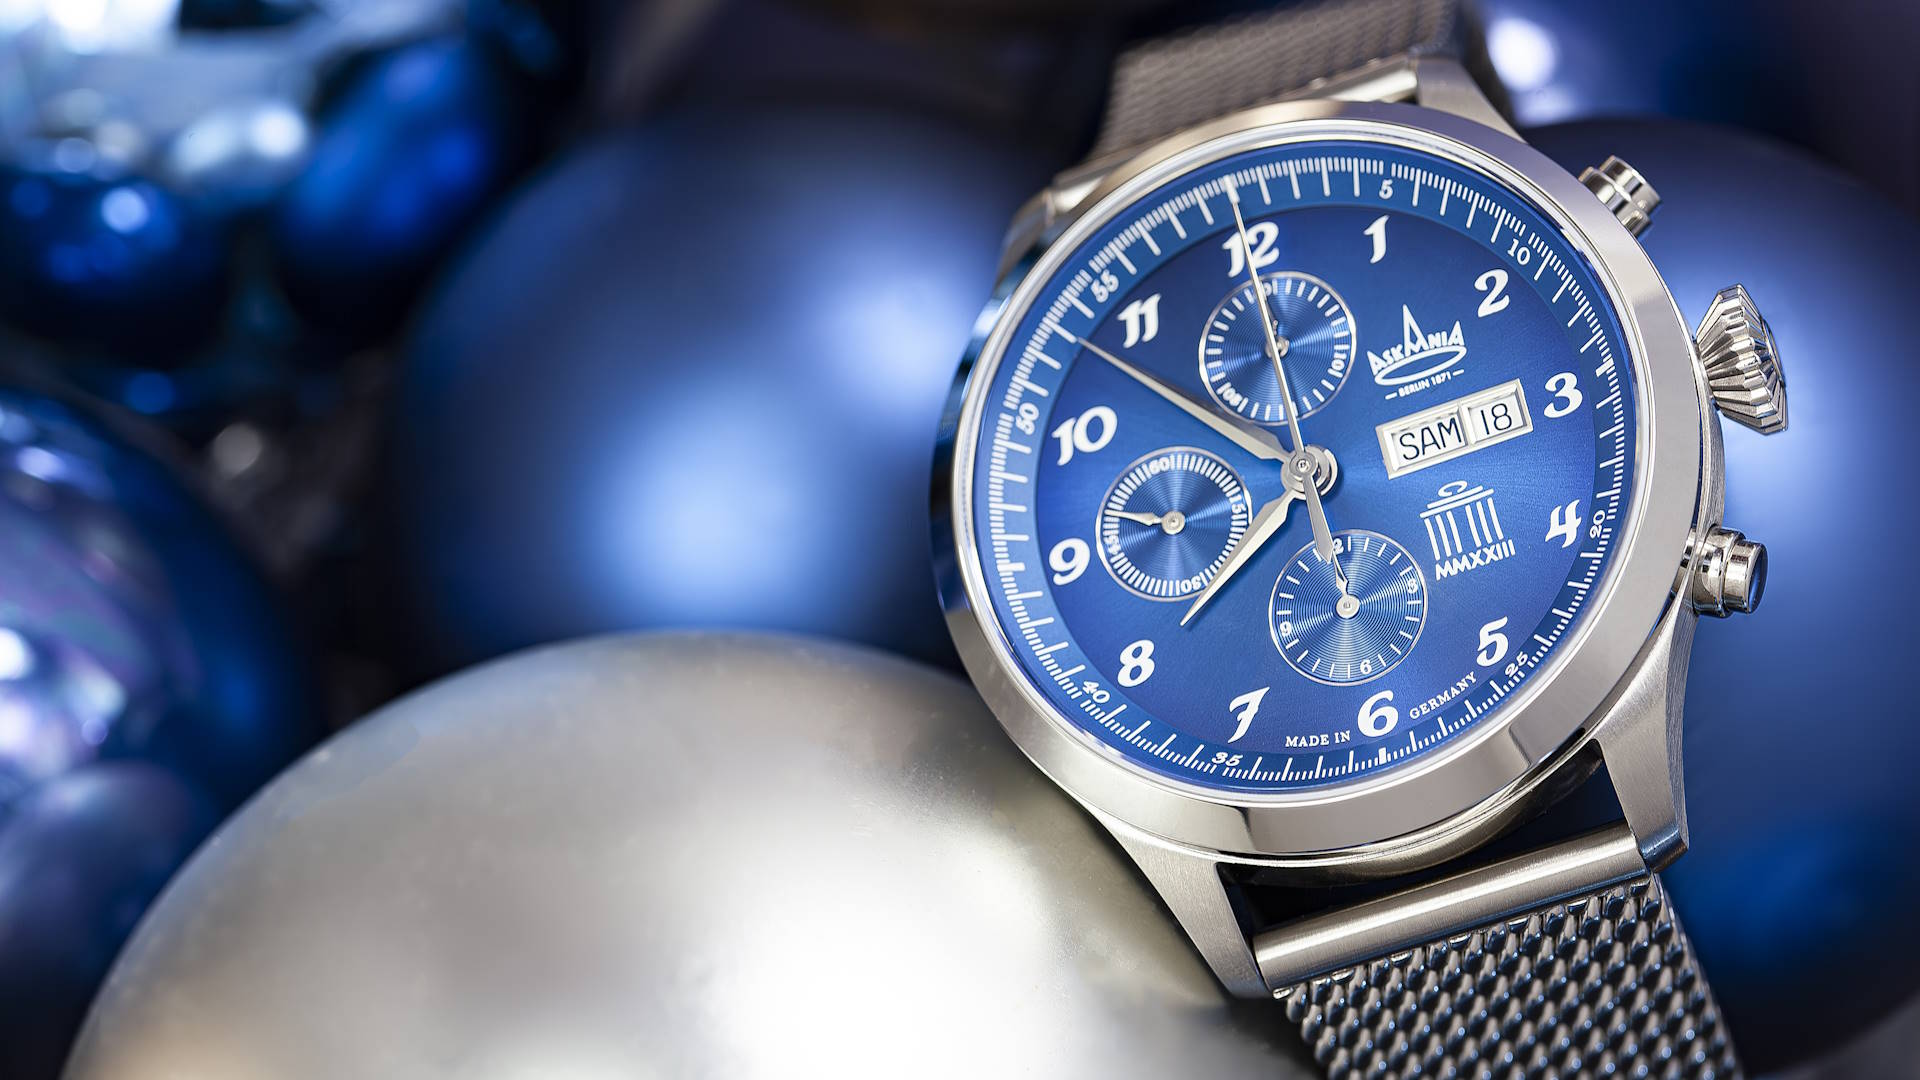 Askania krönt das Jahr mit ihrer limitierten Uhrenedition Quadriga. Erhältlich sind 152 Stück zum Preis von jeweils 5390 Euro.